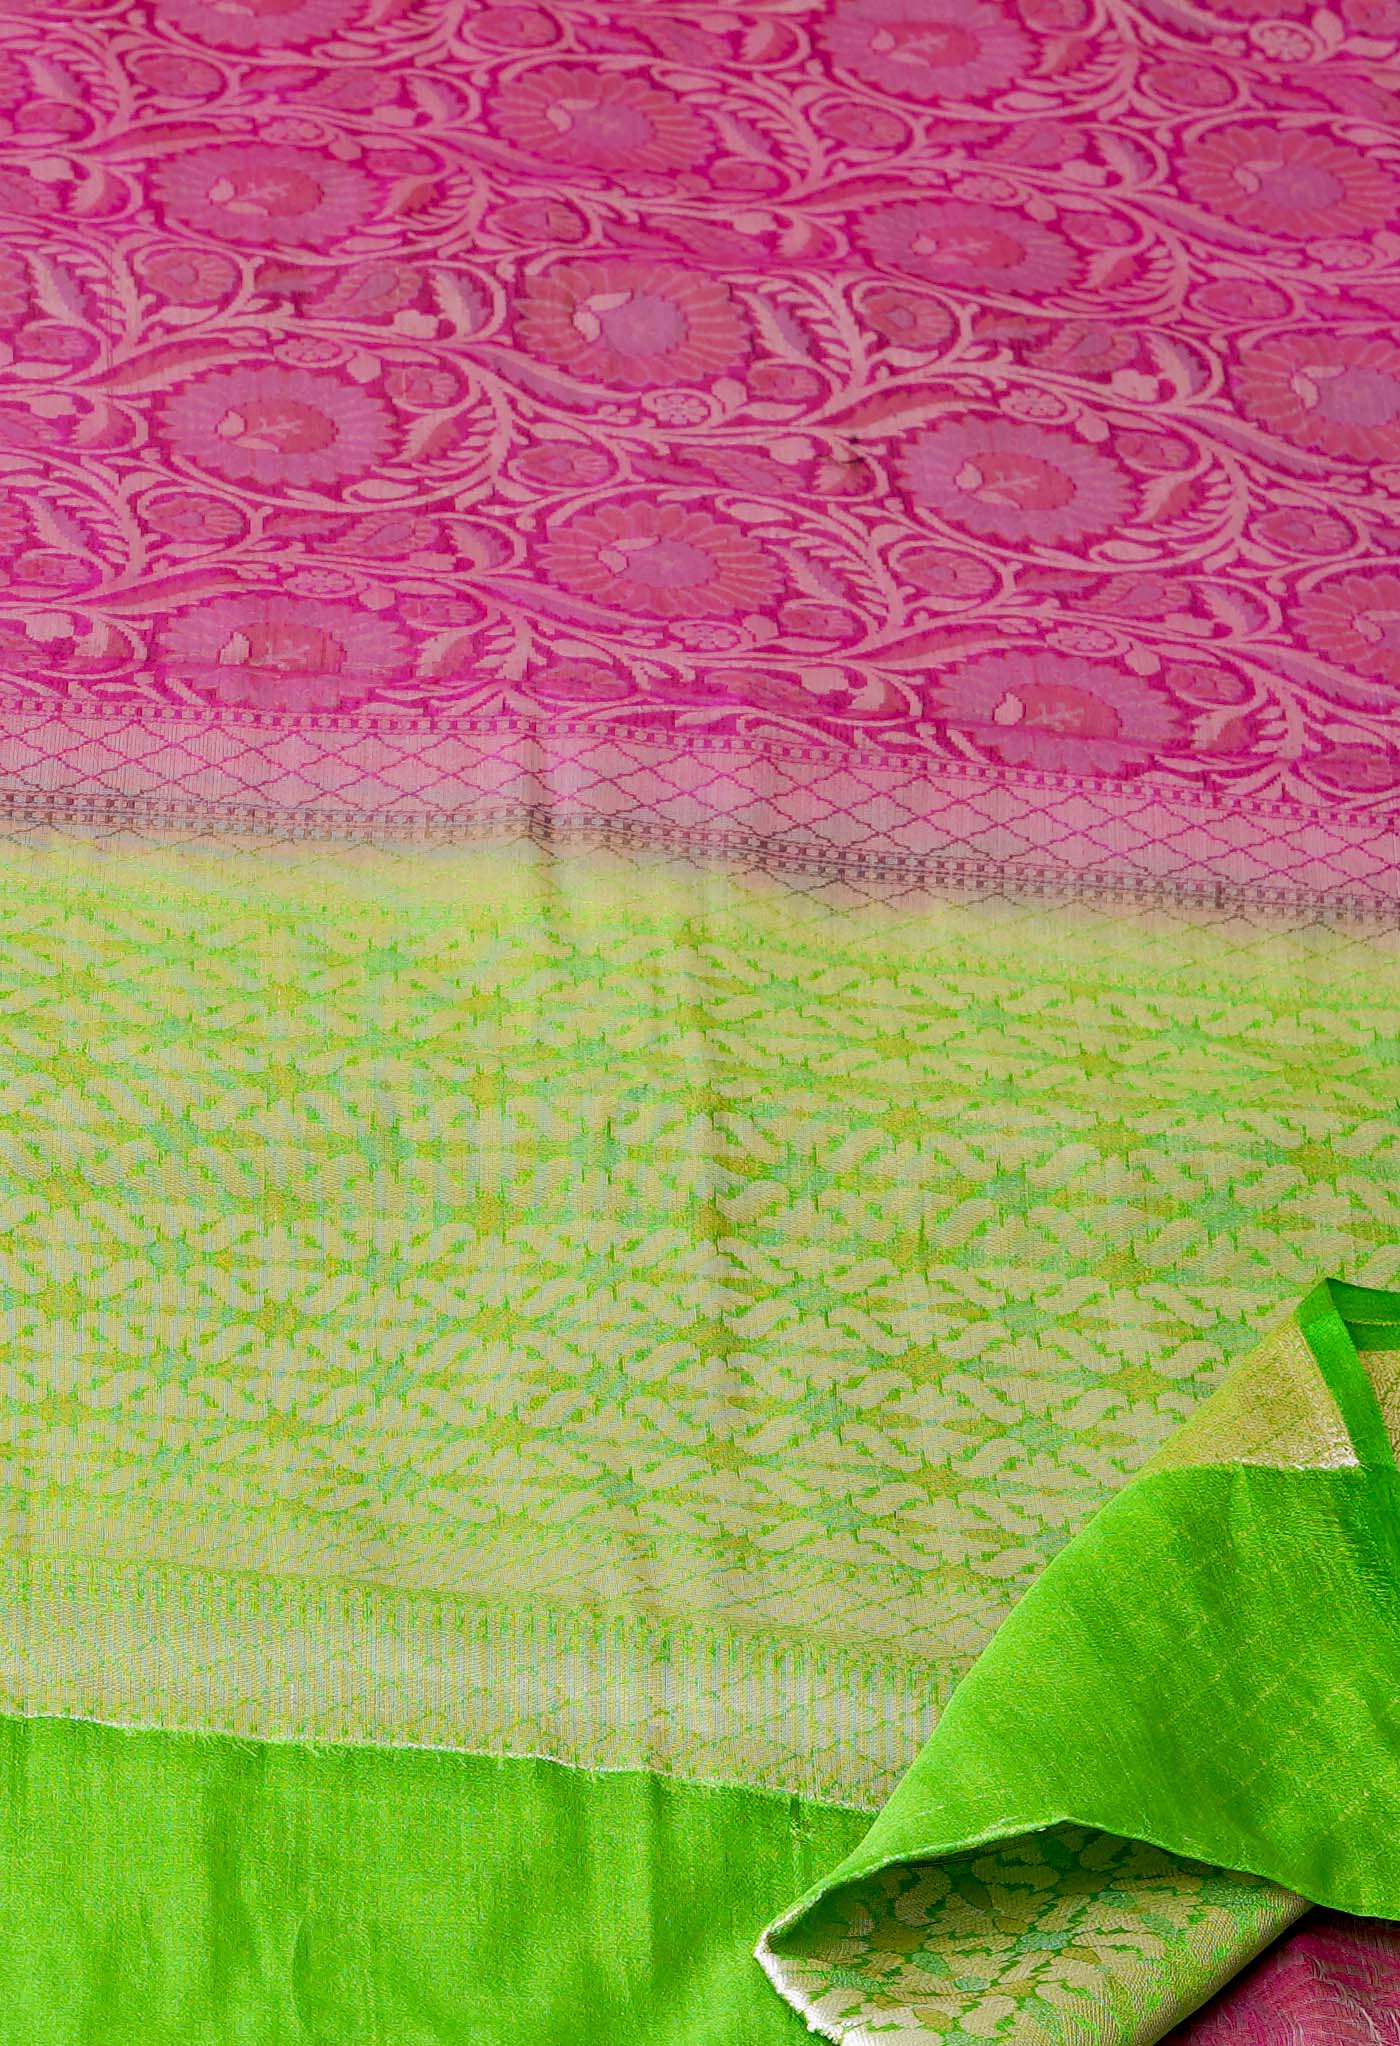 Pink Fancy Banarasi silk Saree